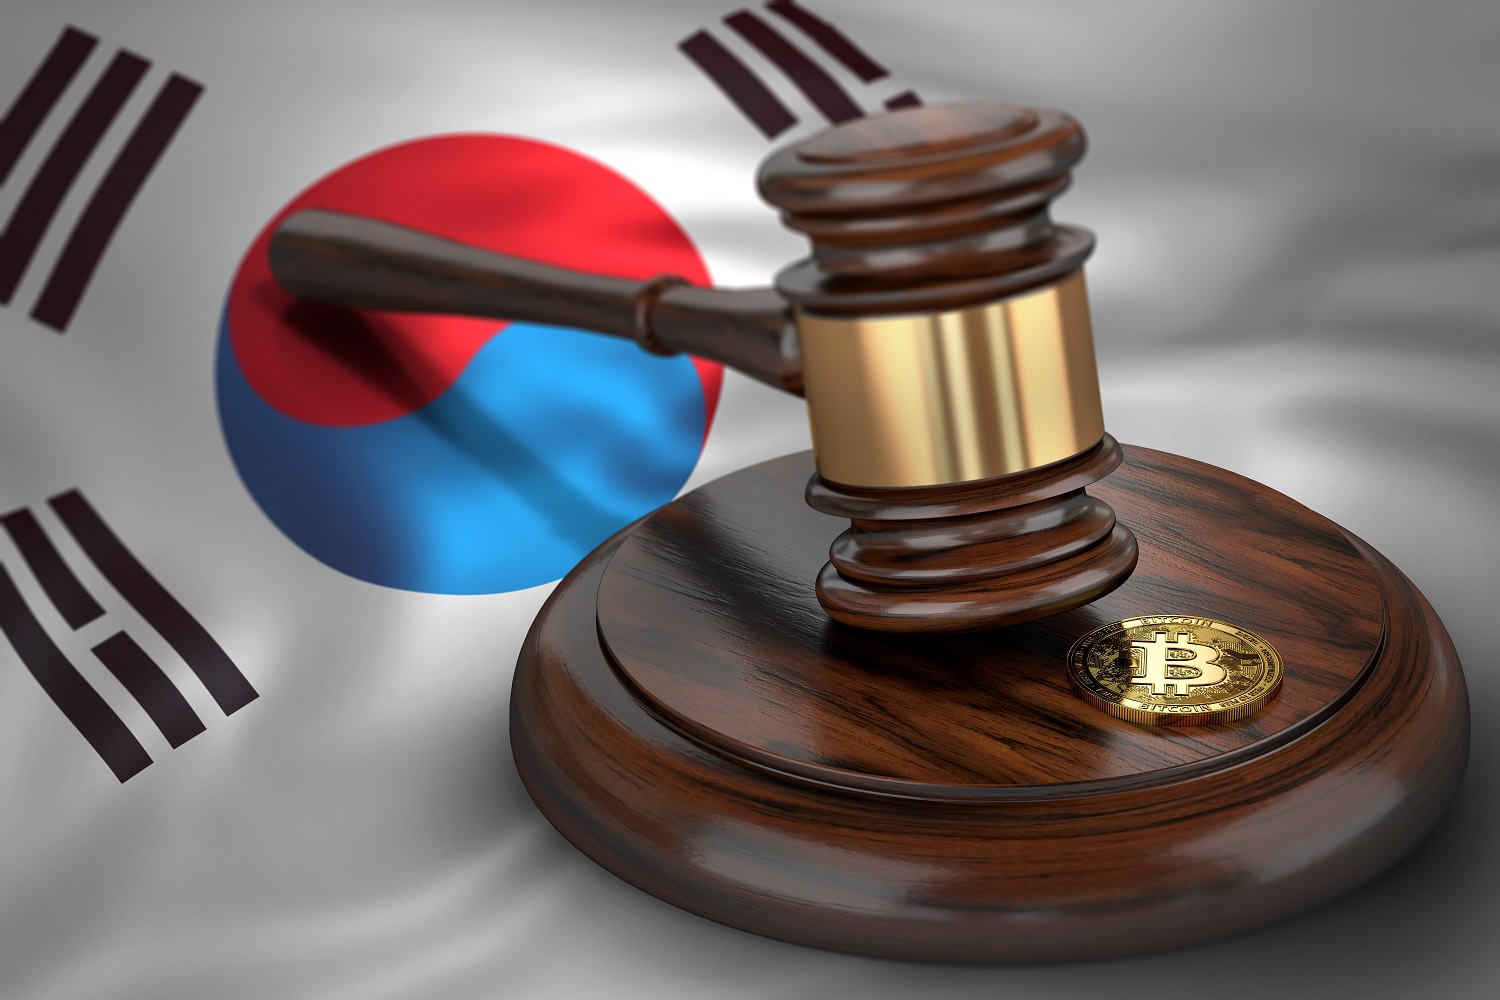 MỘT token nhằm đại diện cho Bitcoin và búa của thẩm phán trên nền cờ của Hàn Quốc.